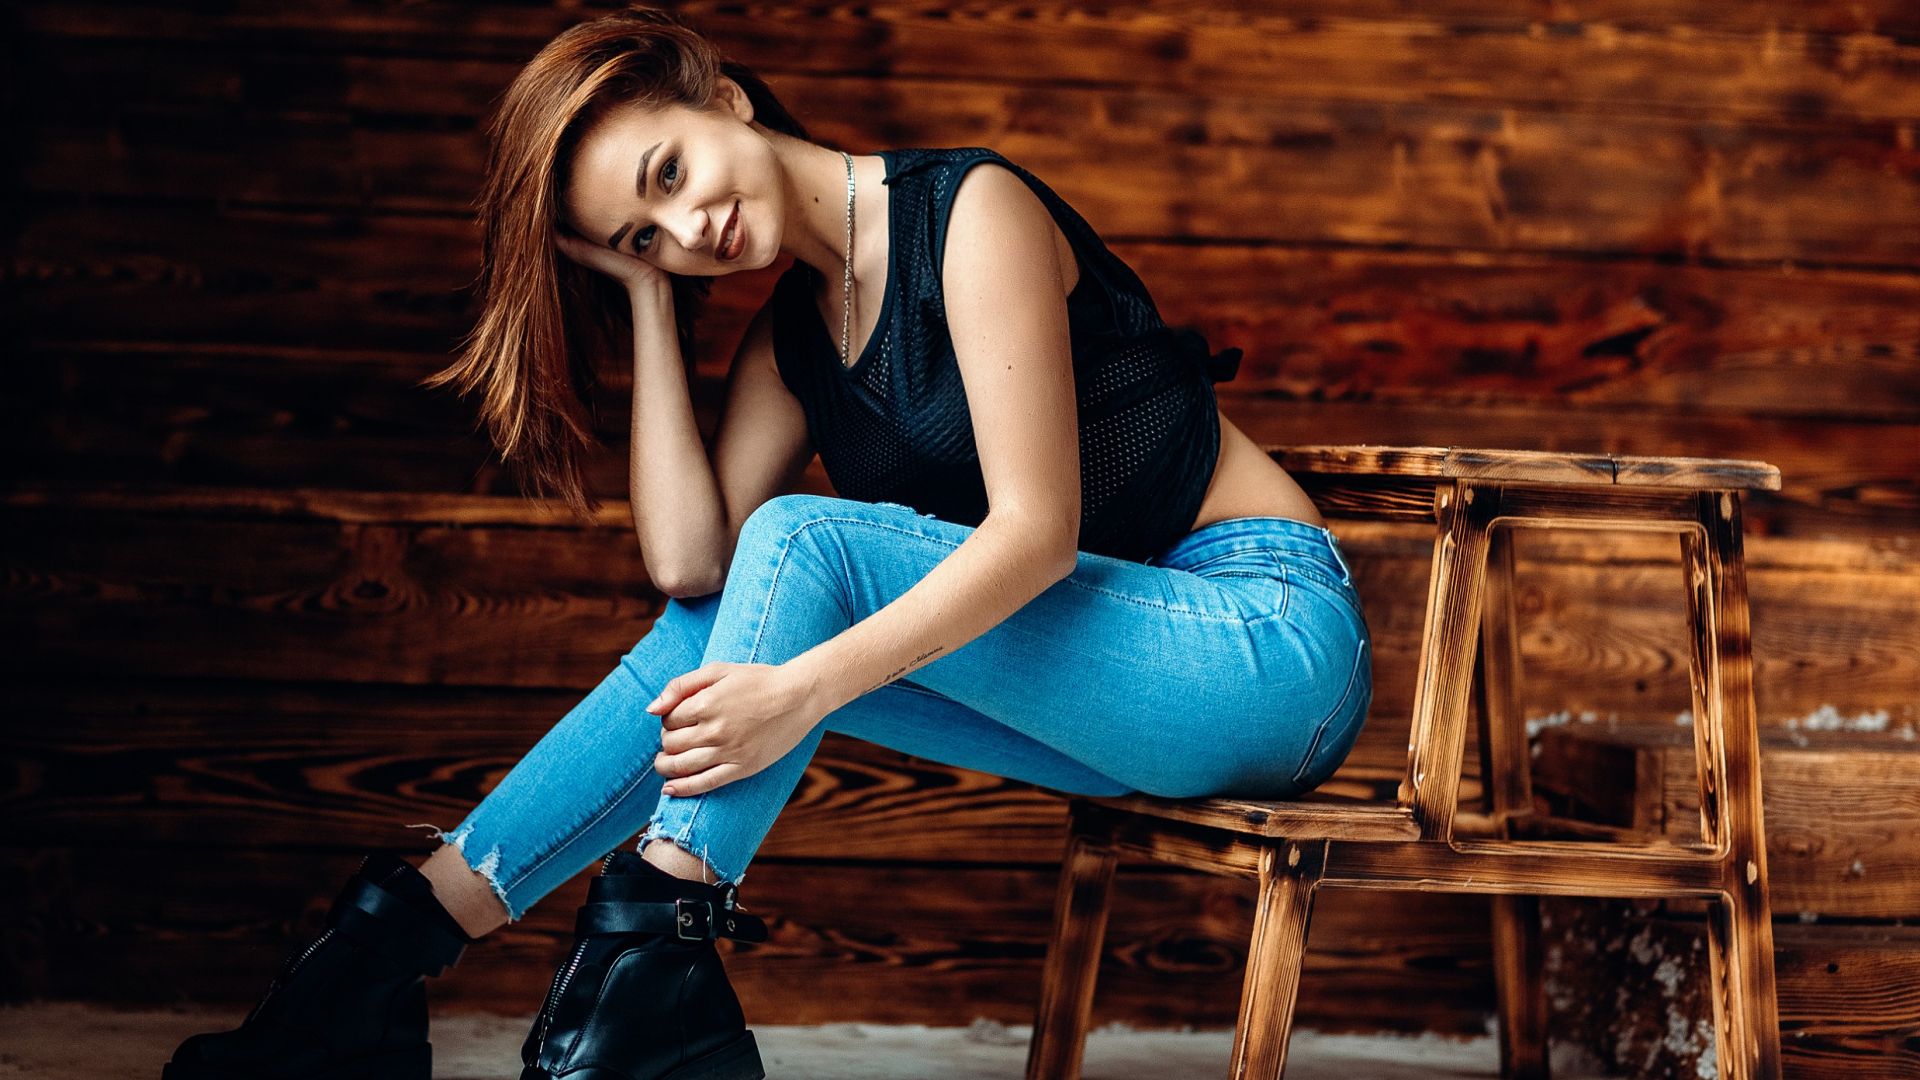 Wallpaper Smiling face, sitting, blue jeans, girl model